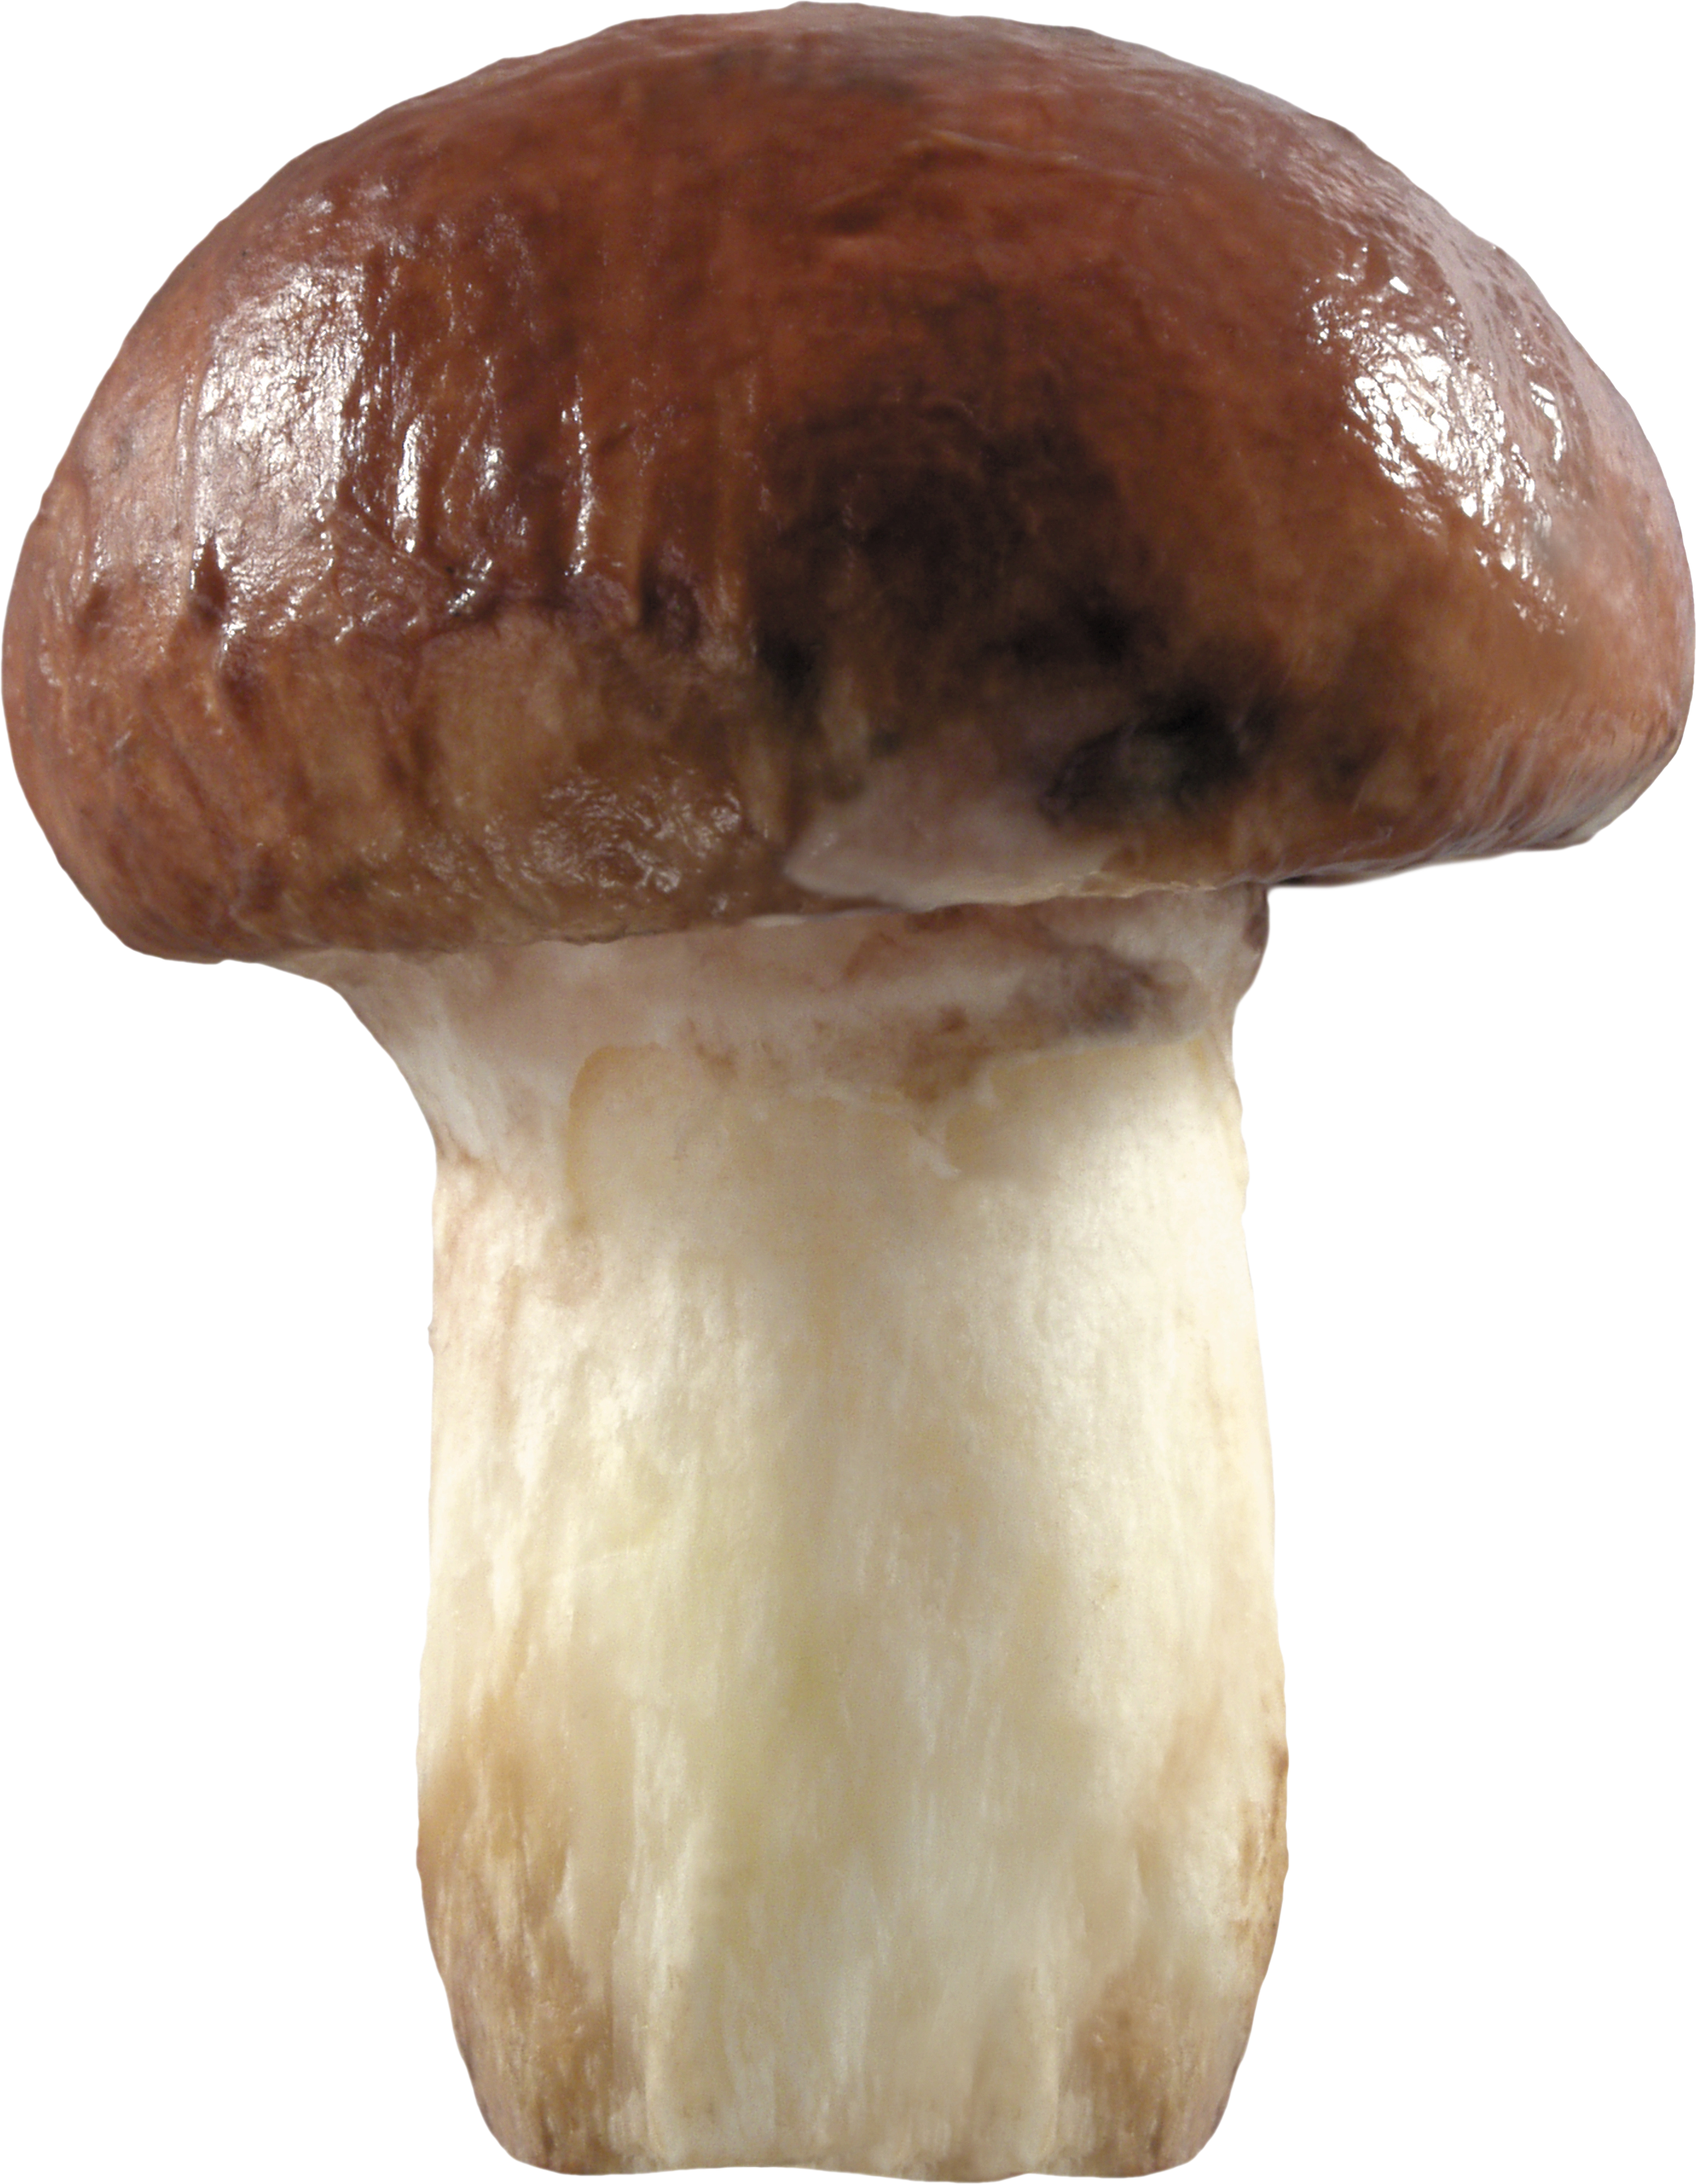 single mushroom images mushroom pictures #9086